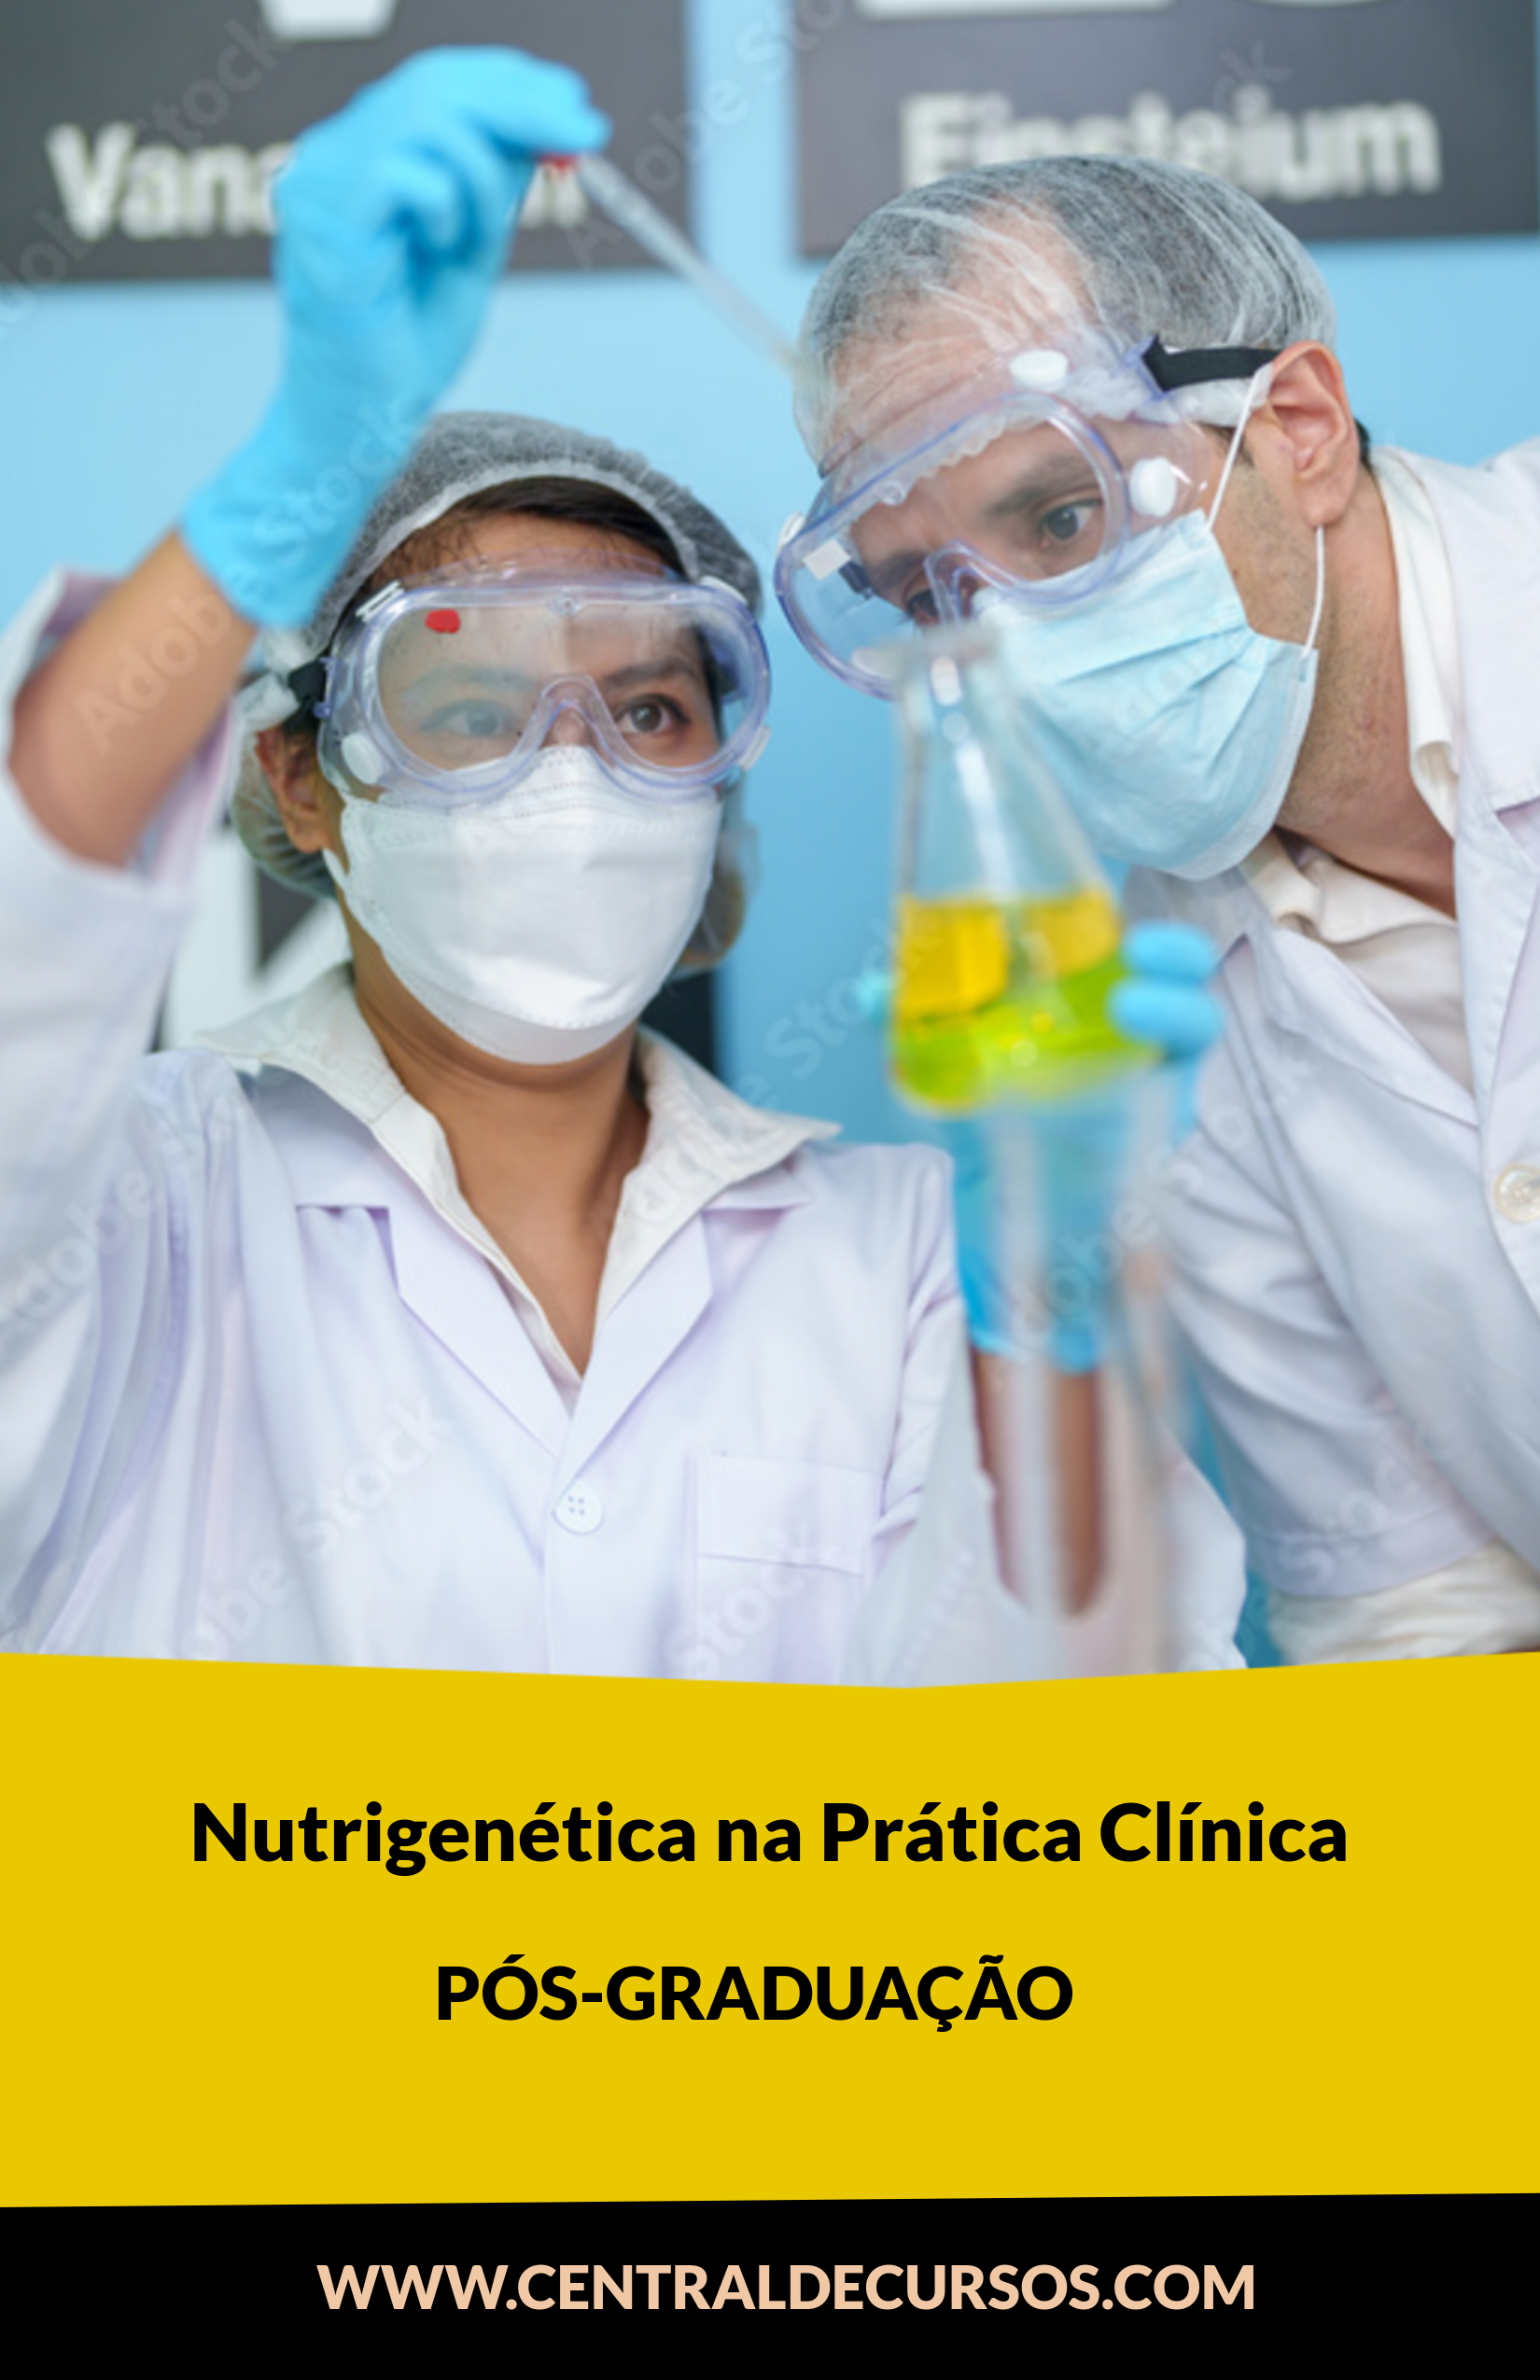  Nutrigenômica E Nutrigenética Na Prática Clínica